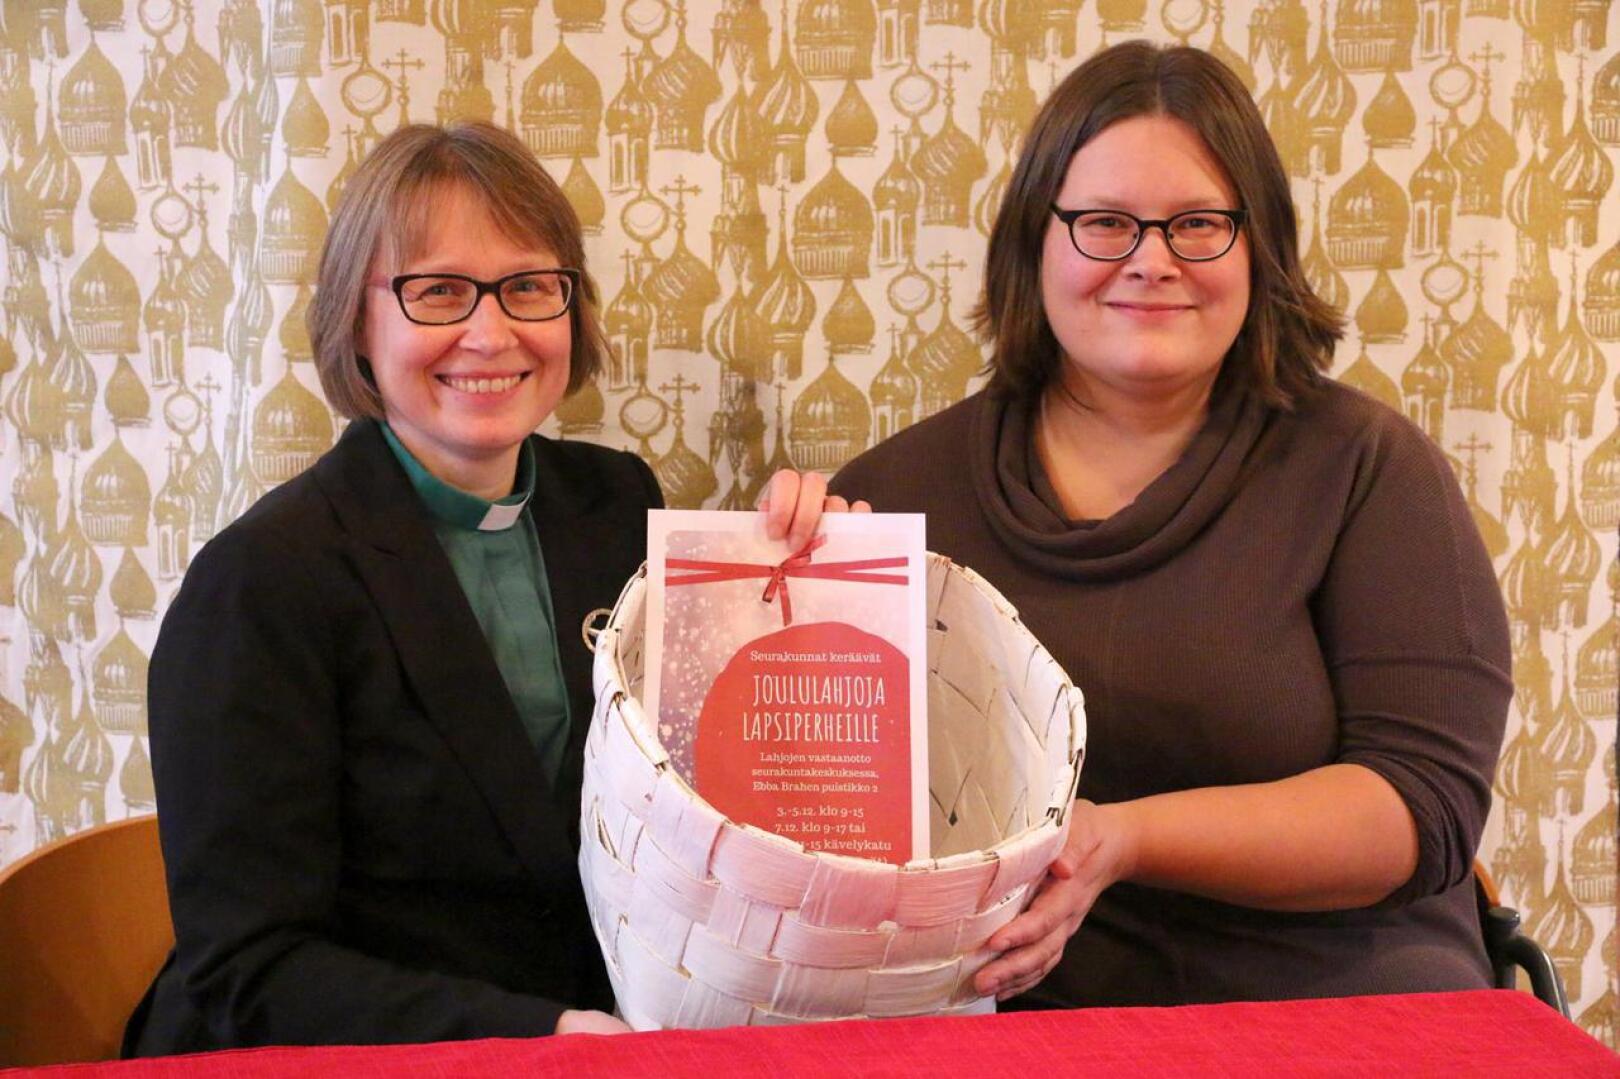 Suomalaisen seurakunnan diakoniatyötä tekevät Kirsi Rundgren ja Sanna Ormiskangas jakavat joulumieltä lapsiperheille Pietarsaaressa. Joululahjakeräys käynnistyy reilun viikon kuluttua.